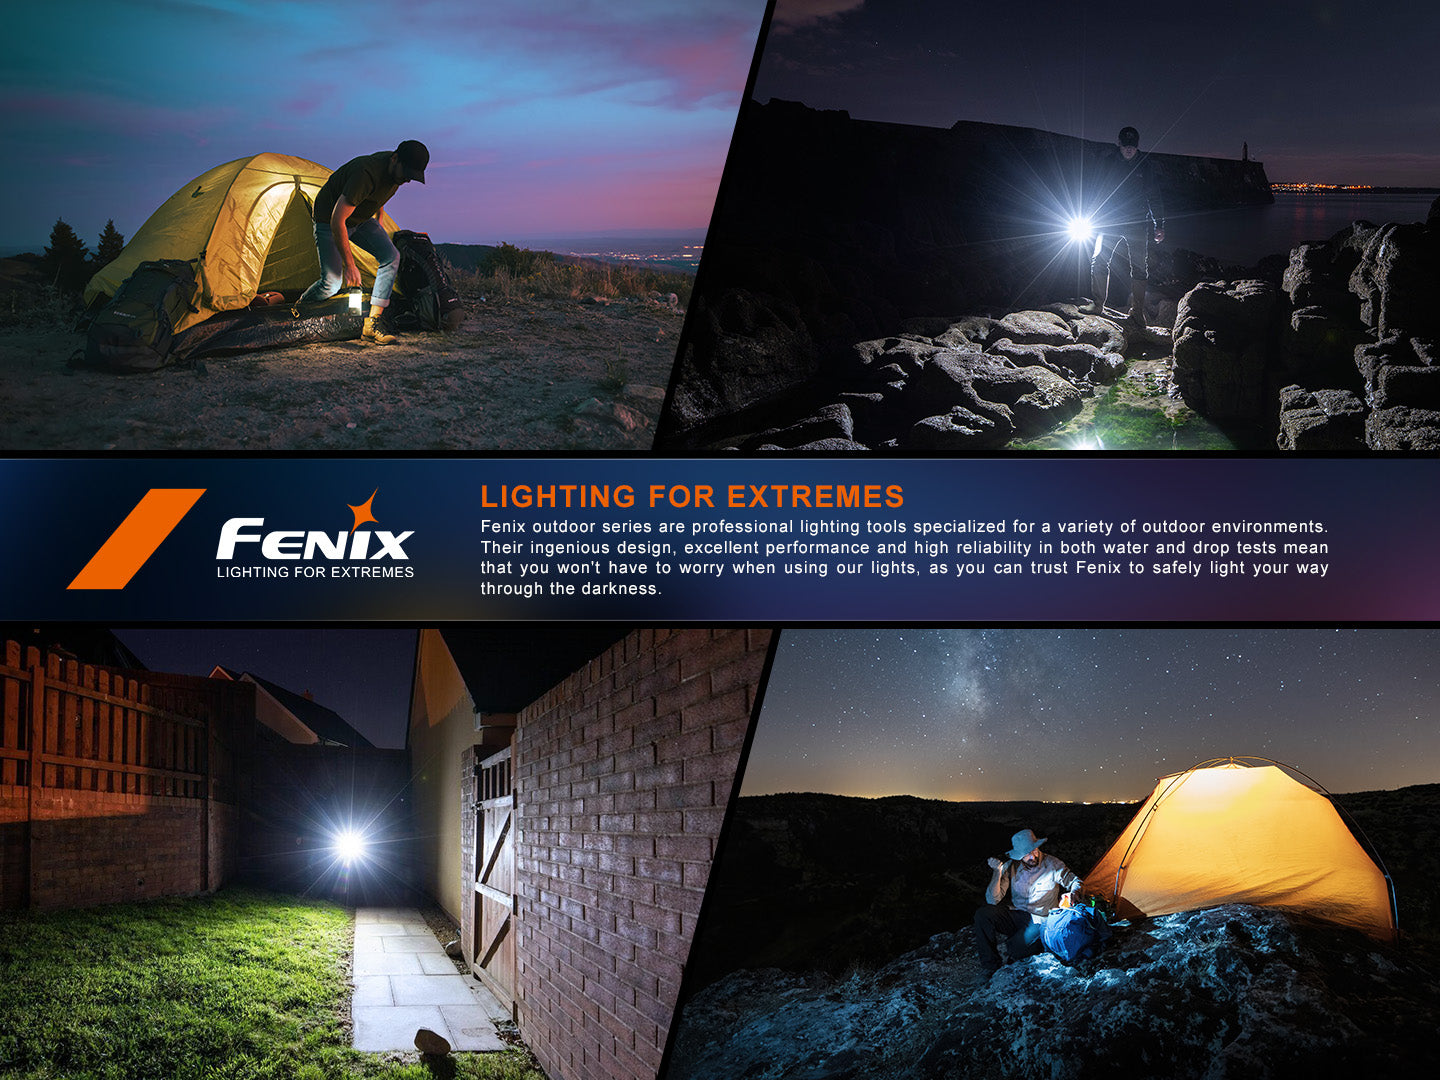 Fenix CL27R - Lanterne multifonction rechargeable USB-C - 1600 lumens